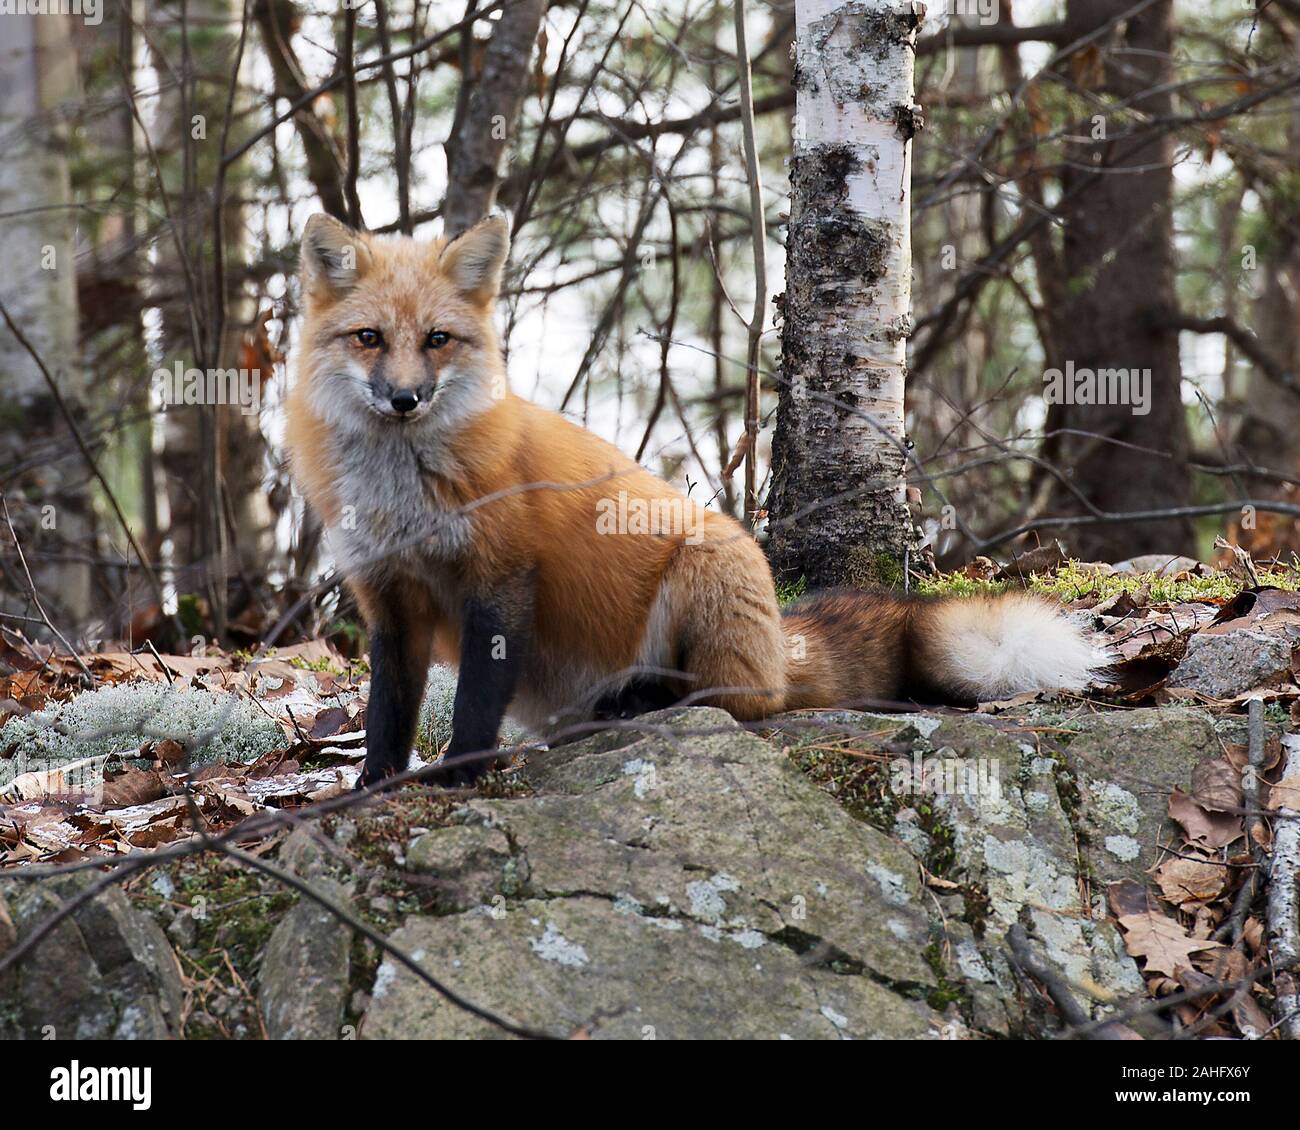 Fox Red Fox animale seduto su una roccia nella foresta godendo le sue circostanti e l'ambiente mentre esponendo il suo corpo, Testa, occhi, orecchie, naso, zampe, ta Foto Stock